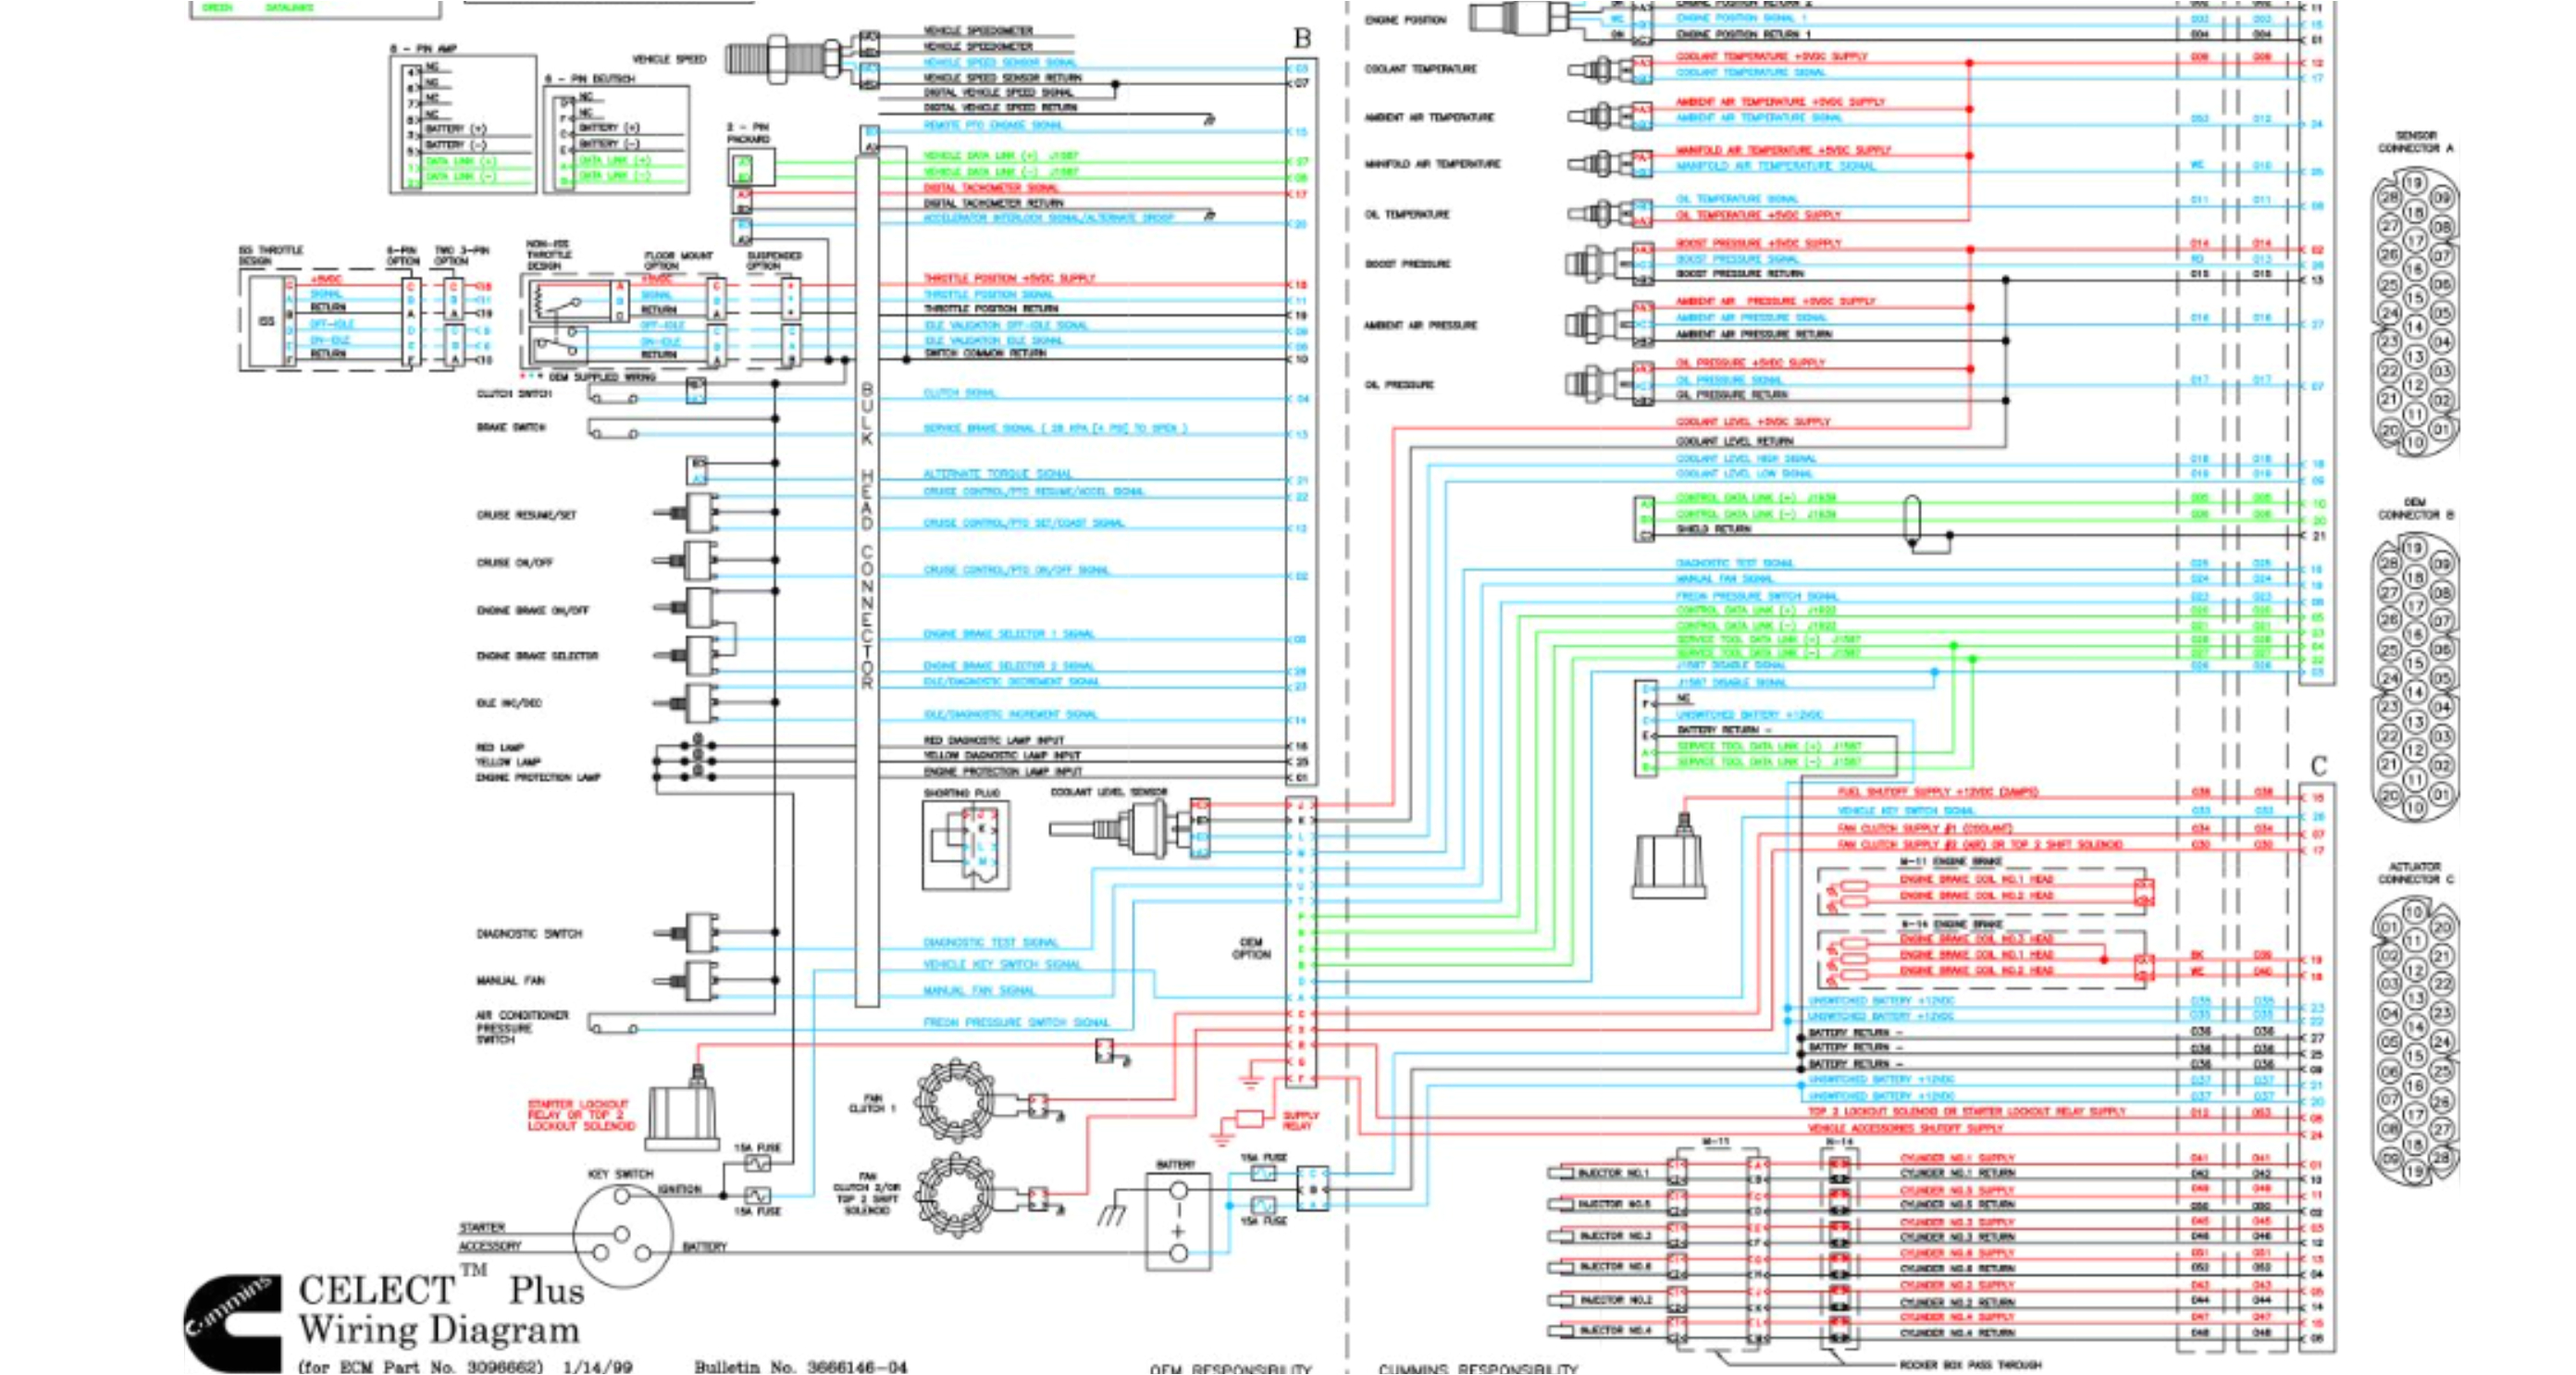 m11 wiring diagram wiring diagram name m11 wiring diagram m11 wiring diagram